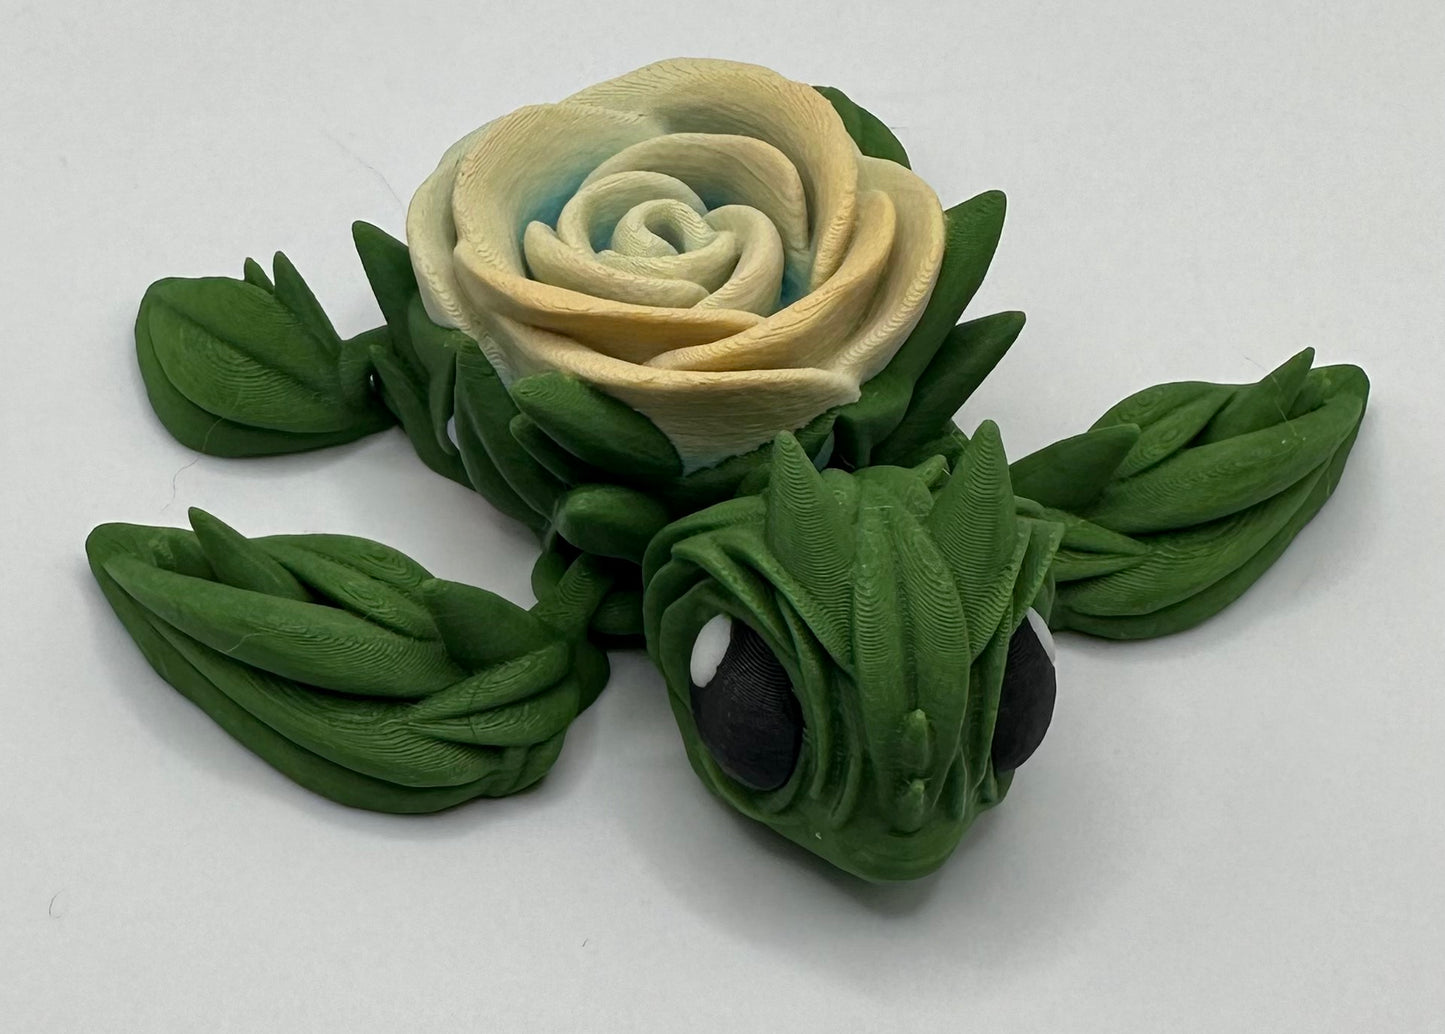 Articulating Rose-urtle